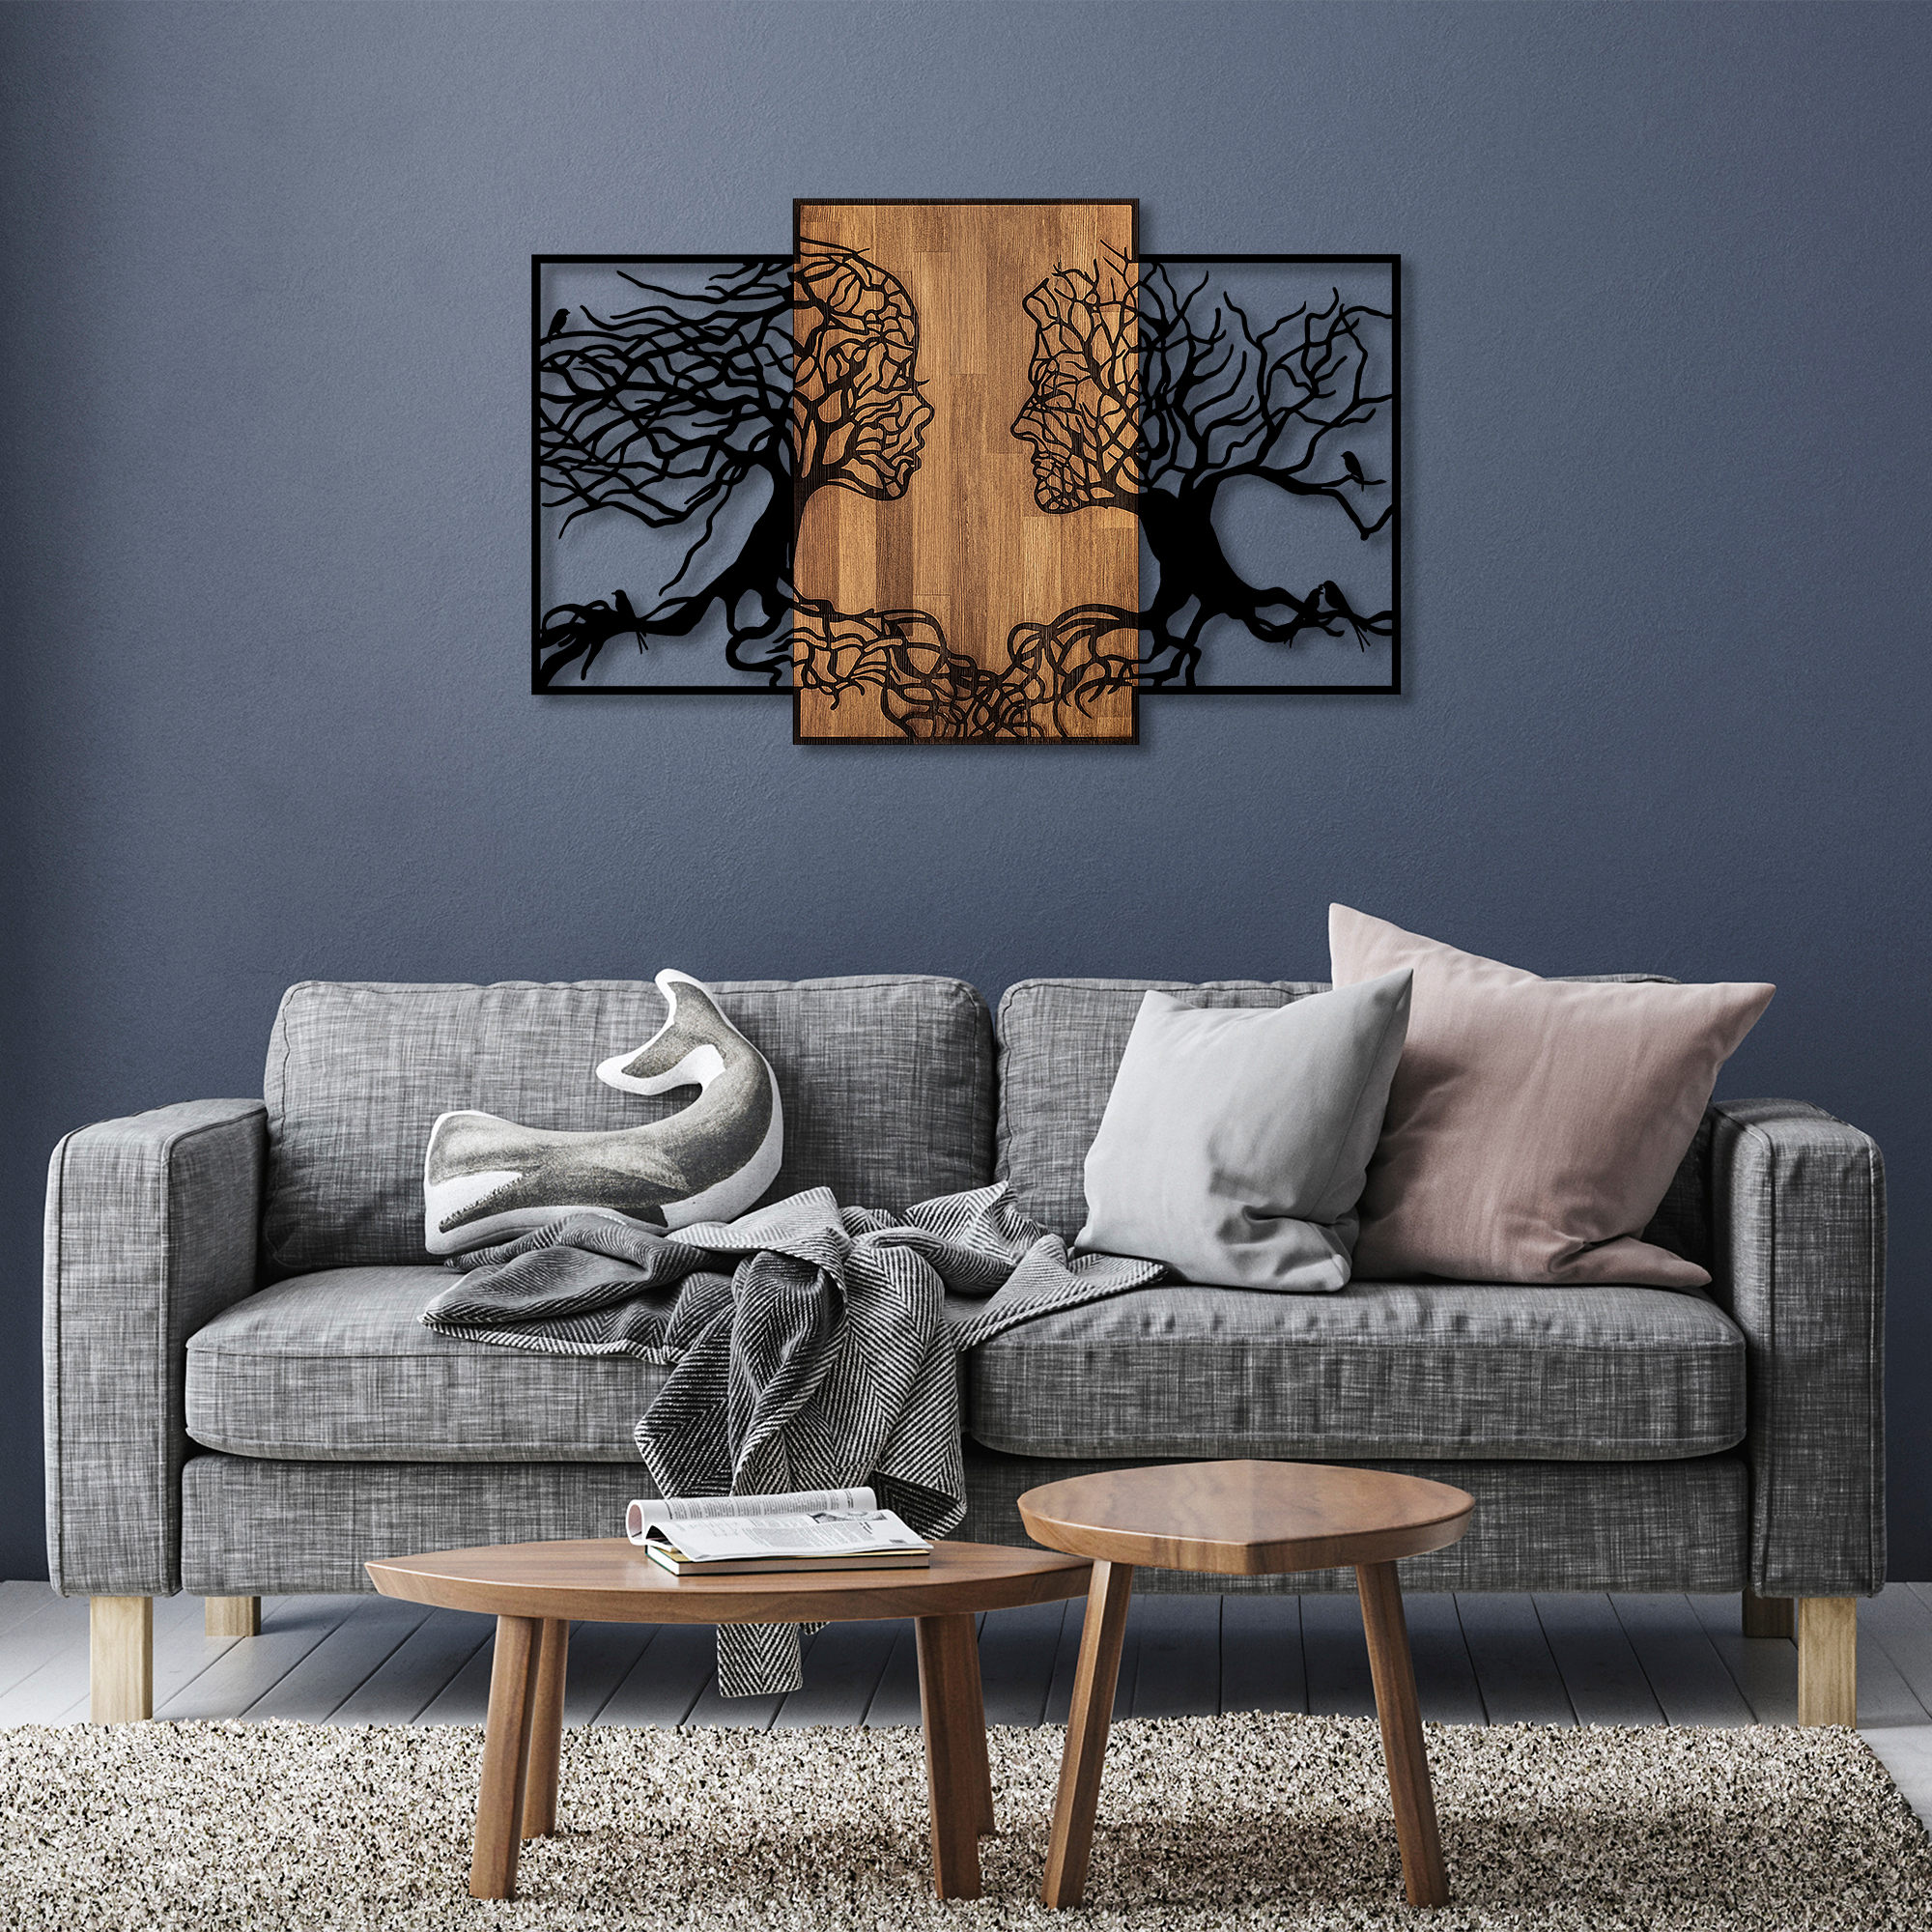 Nástěnná dekorace dřevo kov TREE LOVE černá ořech